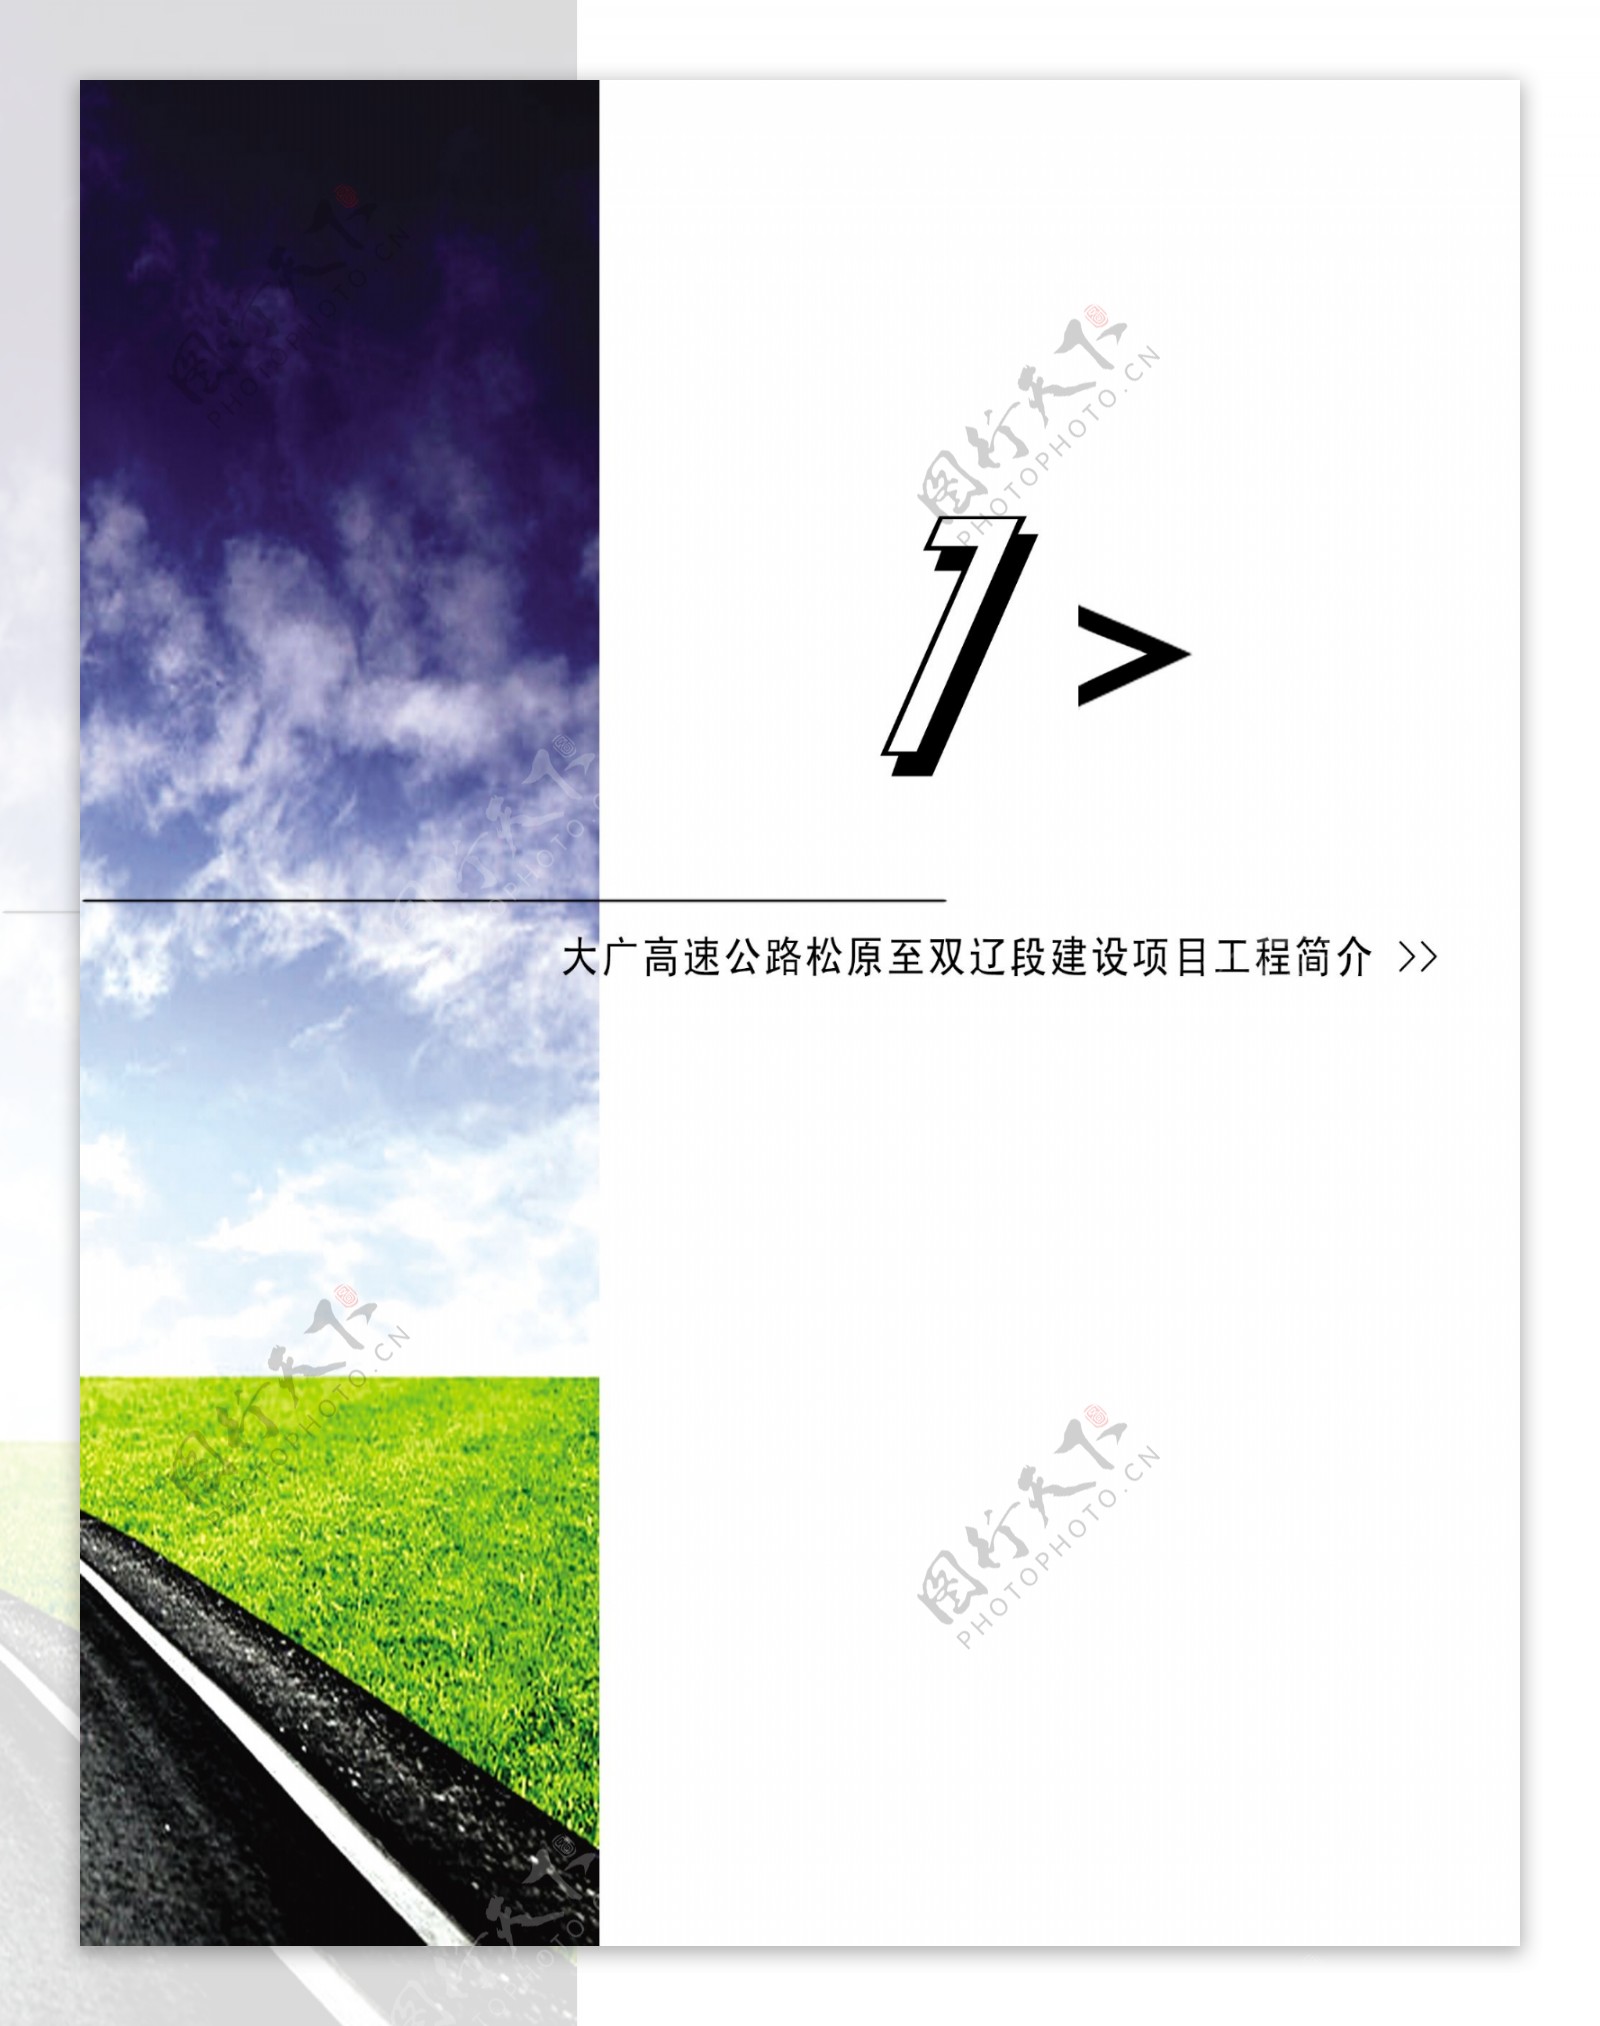 大广高速公路2页图片